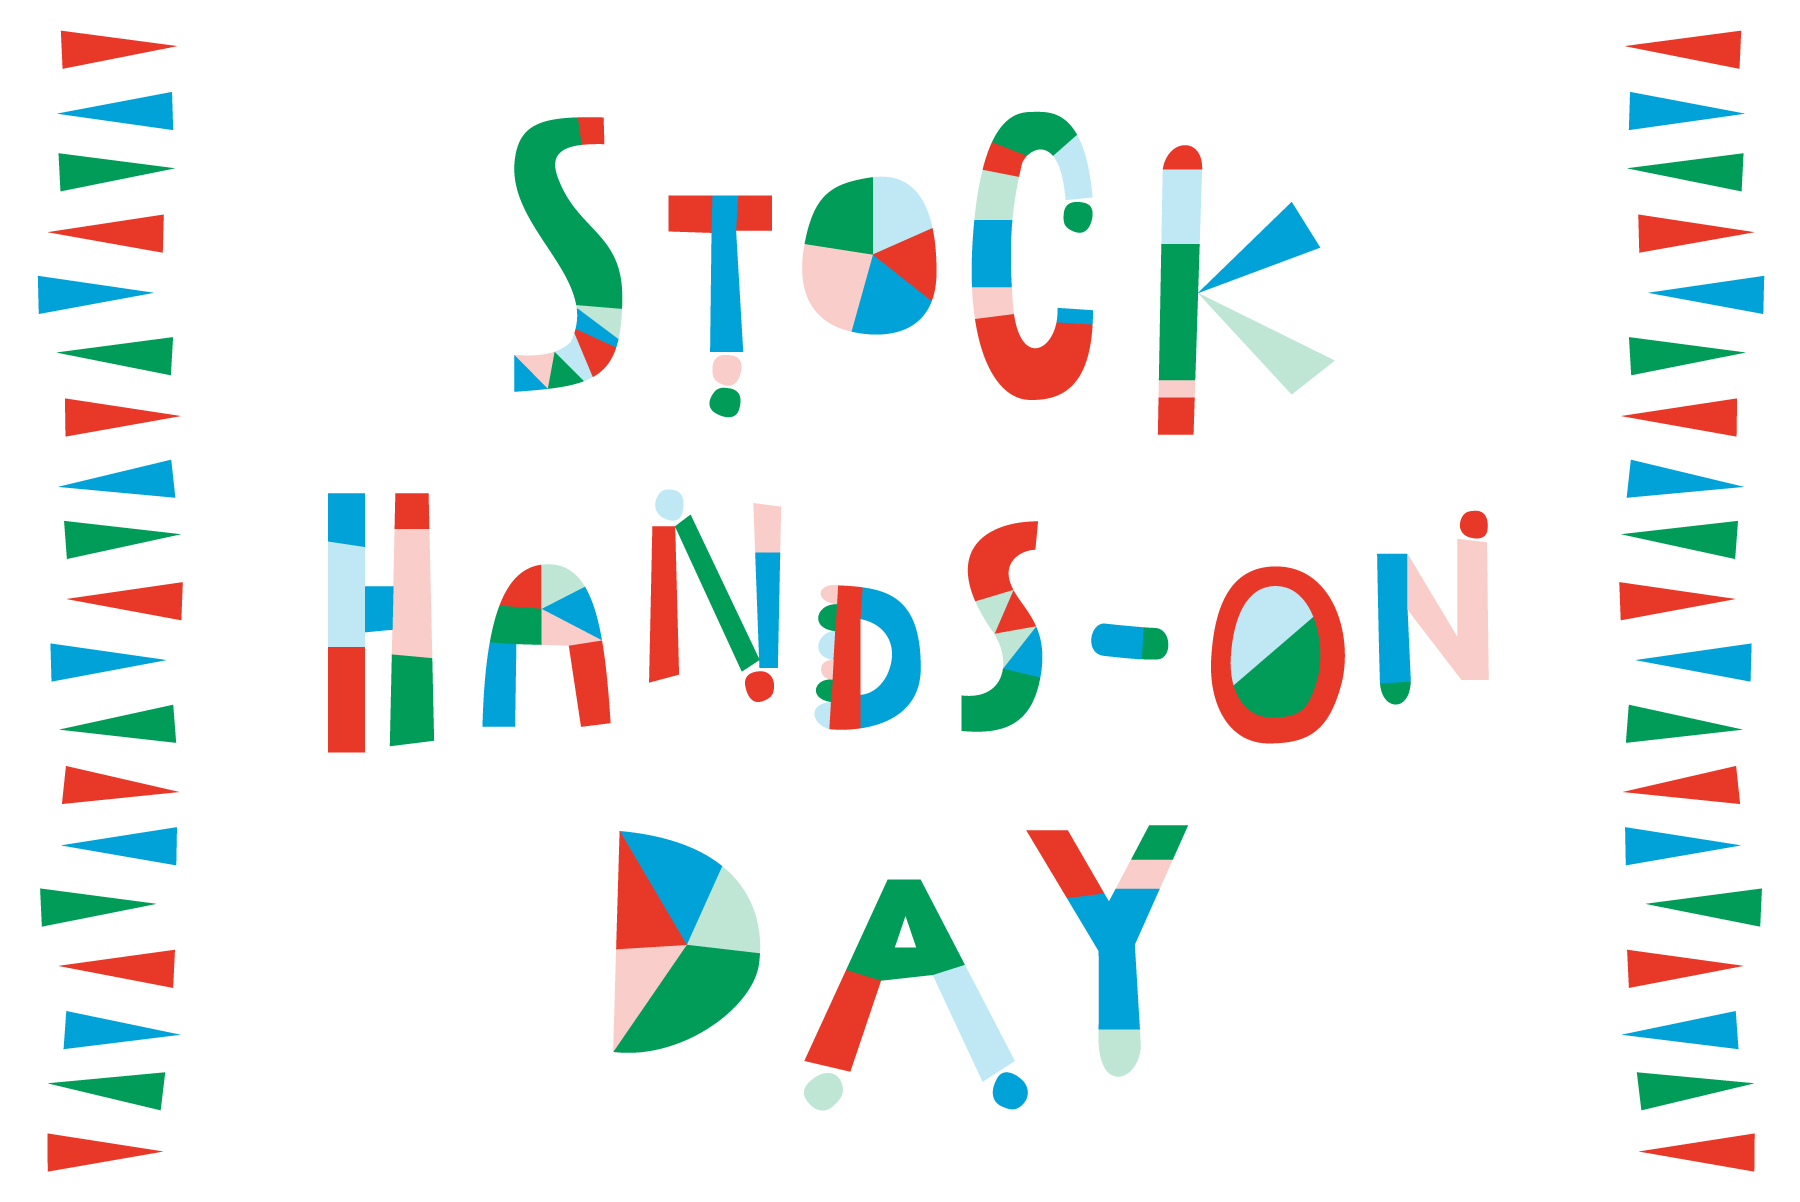 ミニワークショップを体験できる《 STOCK HANDS-ON DAY》を開催します！